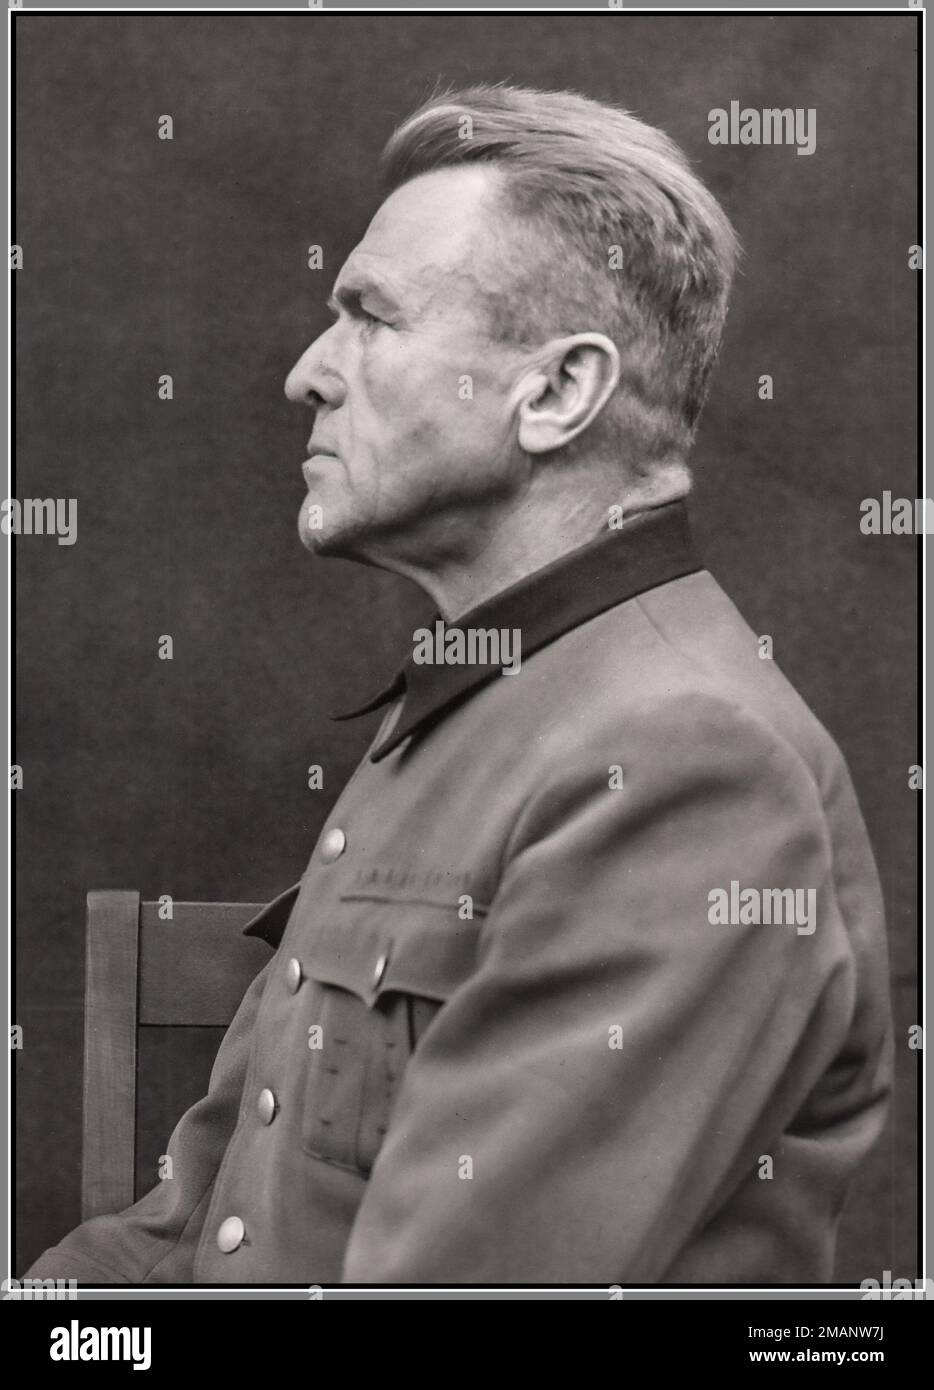 Gefangener Nazi Karl August Genzken 1945 ein Nazi-Arzt, der an Gefangenen mehrerer Konzentrationslager Experimente am Menschen durchführte. Er war Gruppenführer der Waffen-SS und Leiter der medizinischen Abteilung der Waffen-SS. Genzken wurde als Kriegsverbrecher in Nürnberg angeklagt. Er entkam der Todesstrafe und wurde zu lebenslanger Haft verurteilt. Stockfoto